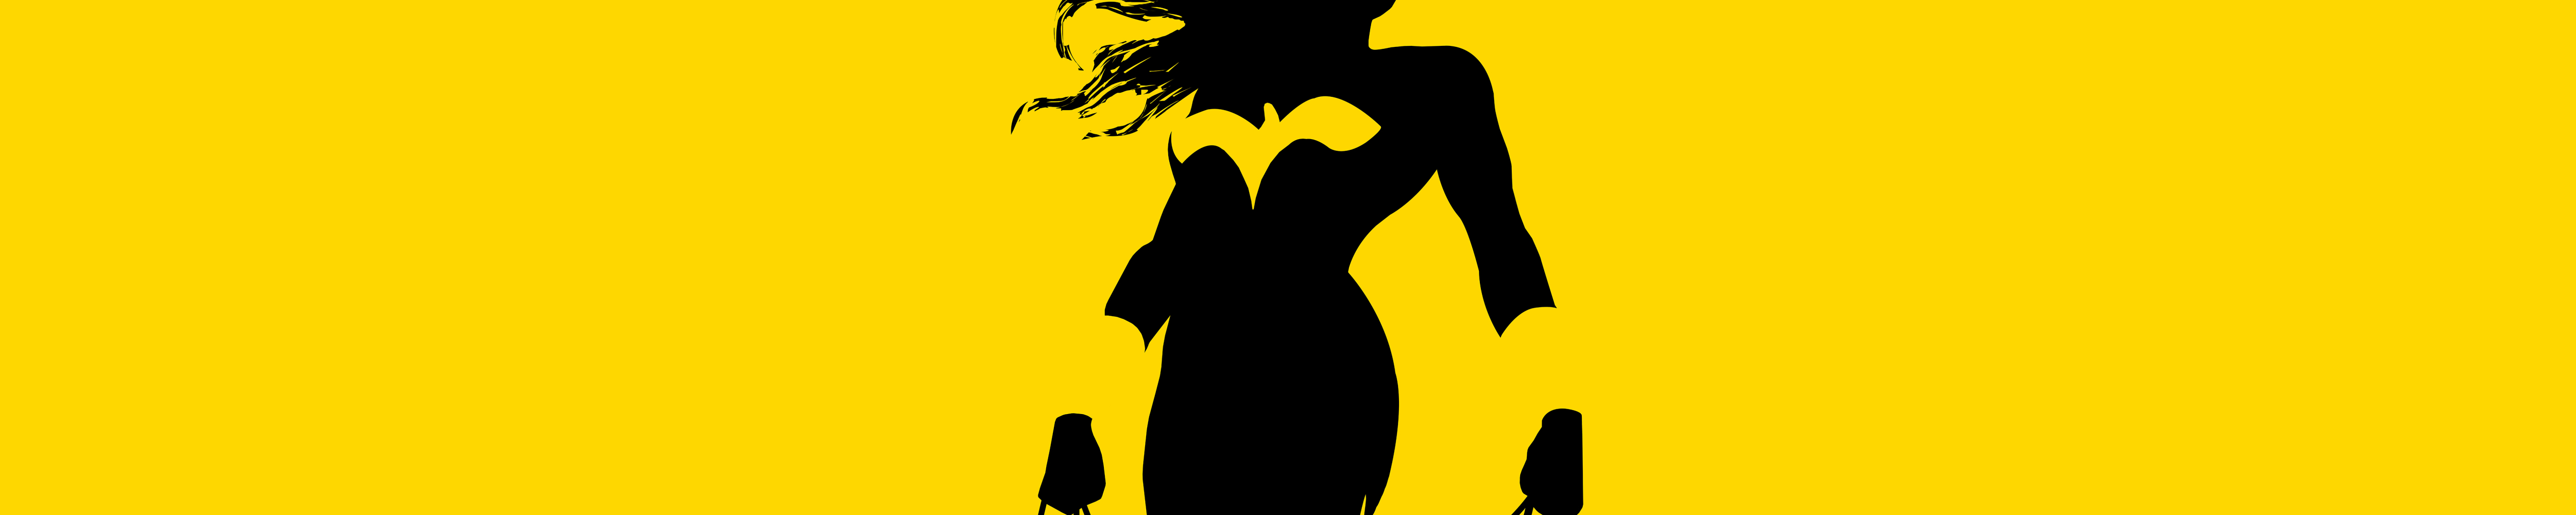 5001x1000 Wonder Woman 8K Minimalist 5001x1000 Resolution Wallpaper, HD ...